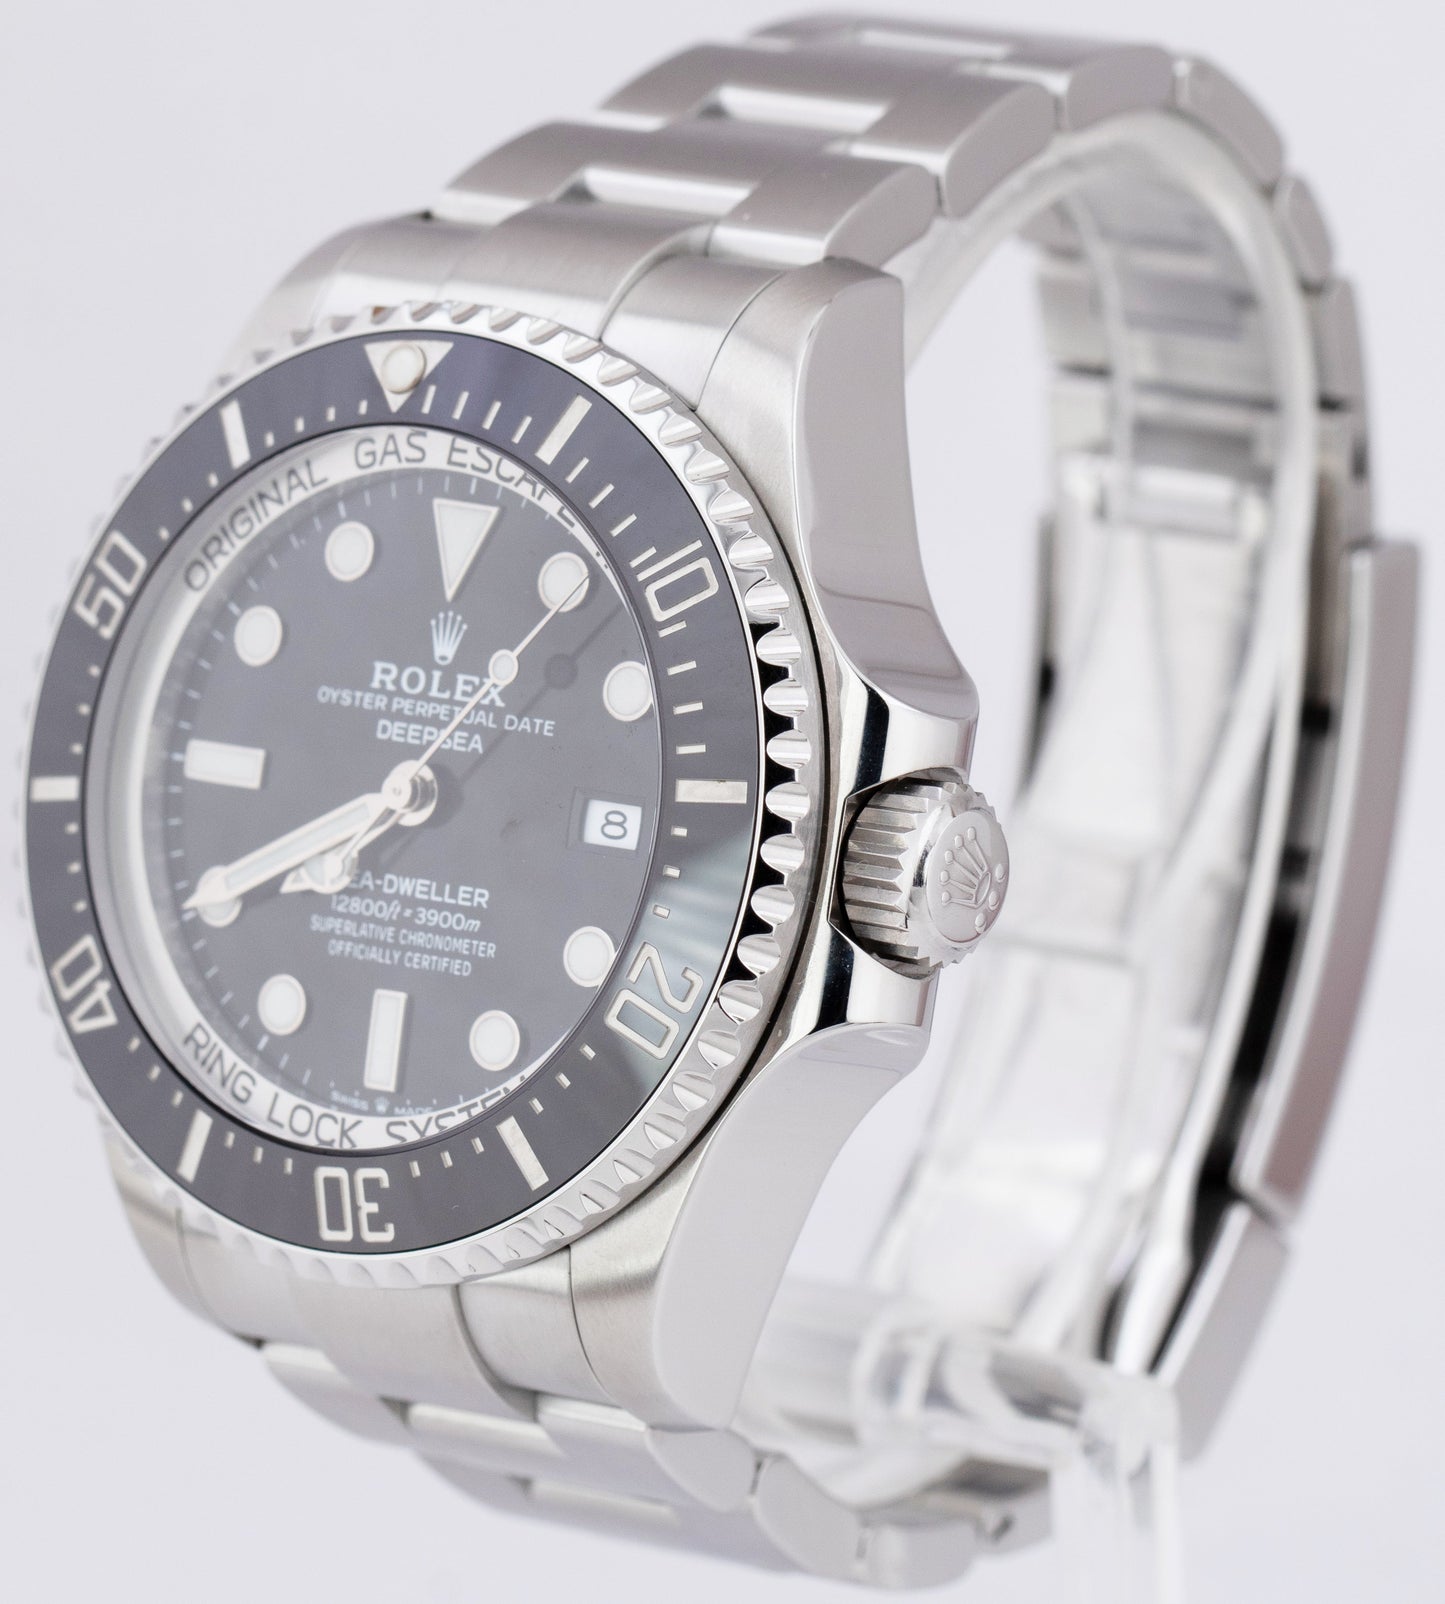 MINT 2019 Rolex Sea-Dweller Deepsea Black 44mm Stainless Steel Watch 126660 CARD